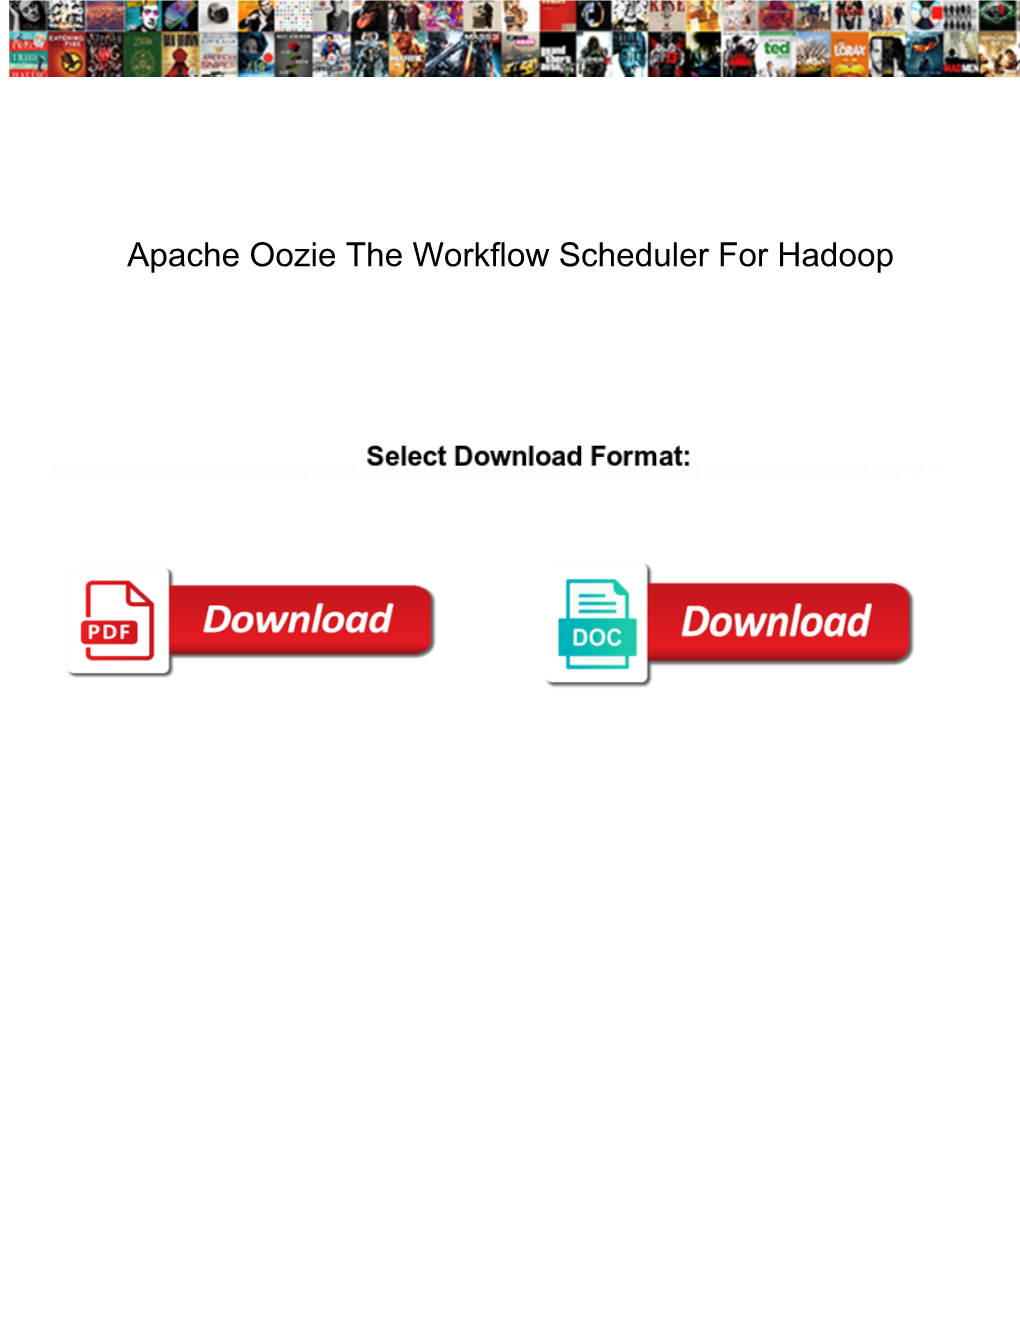 Apache Oozie the Workflow Scheduler for Hadoop